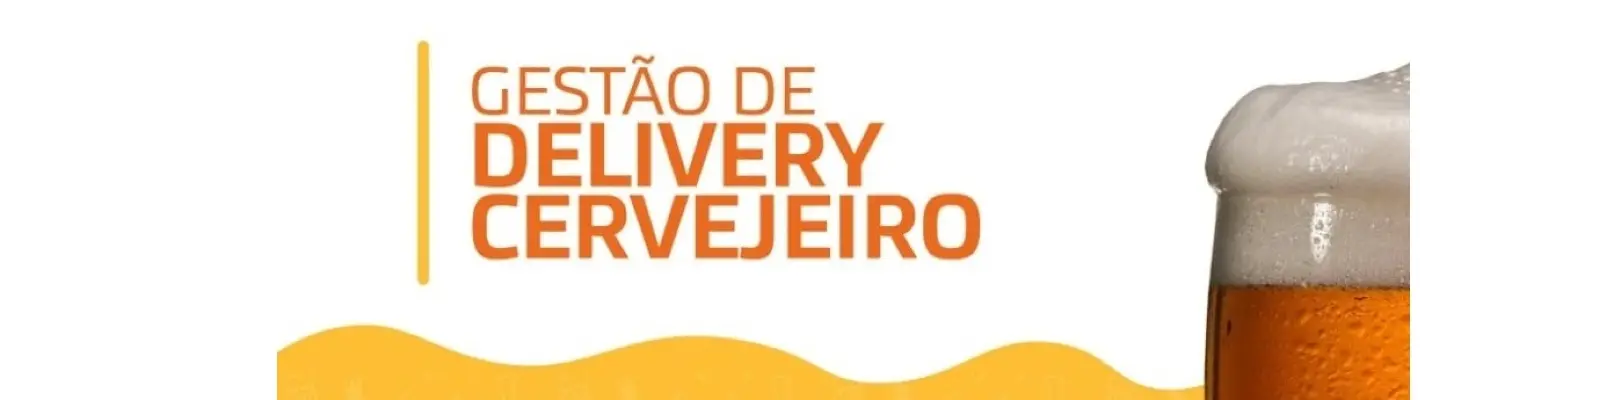 O consumo de cerveja no Brasil e a gestão de delivery cervejeiro